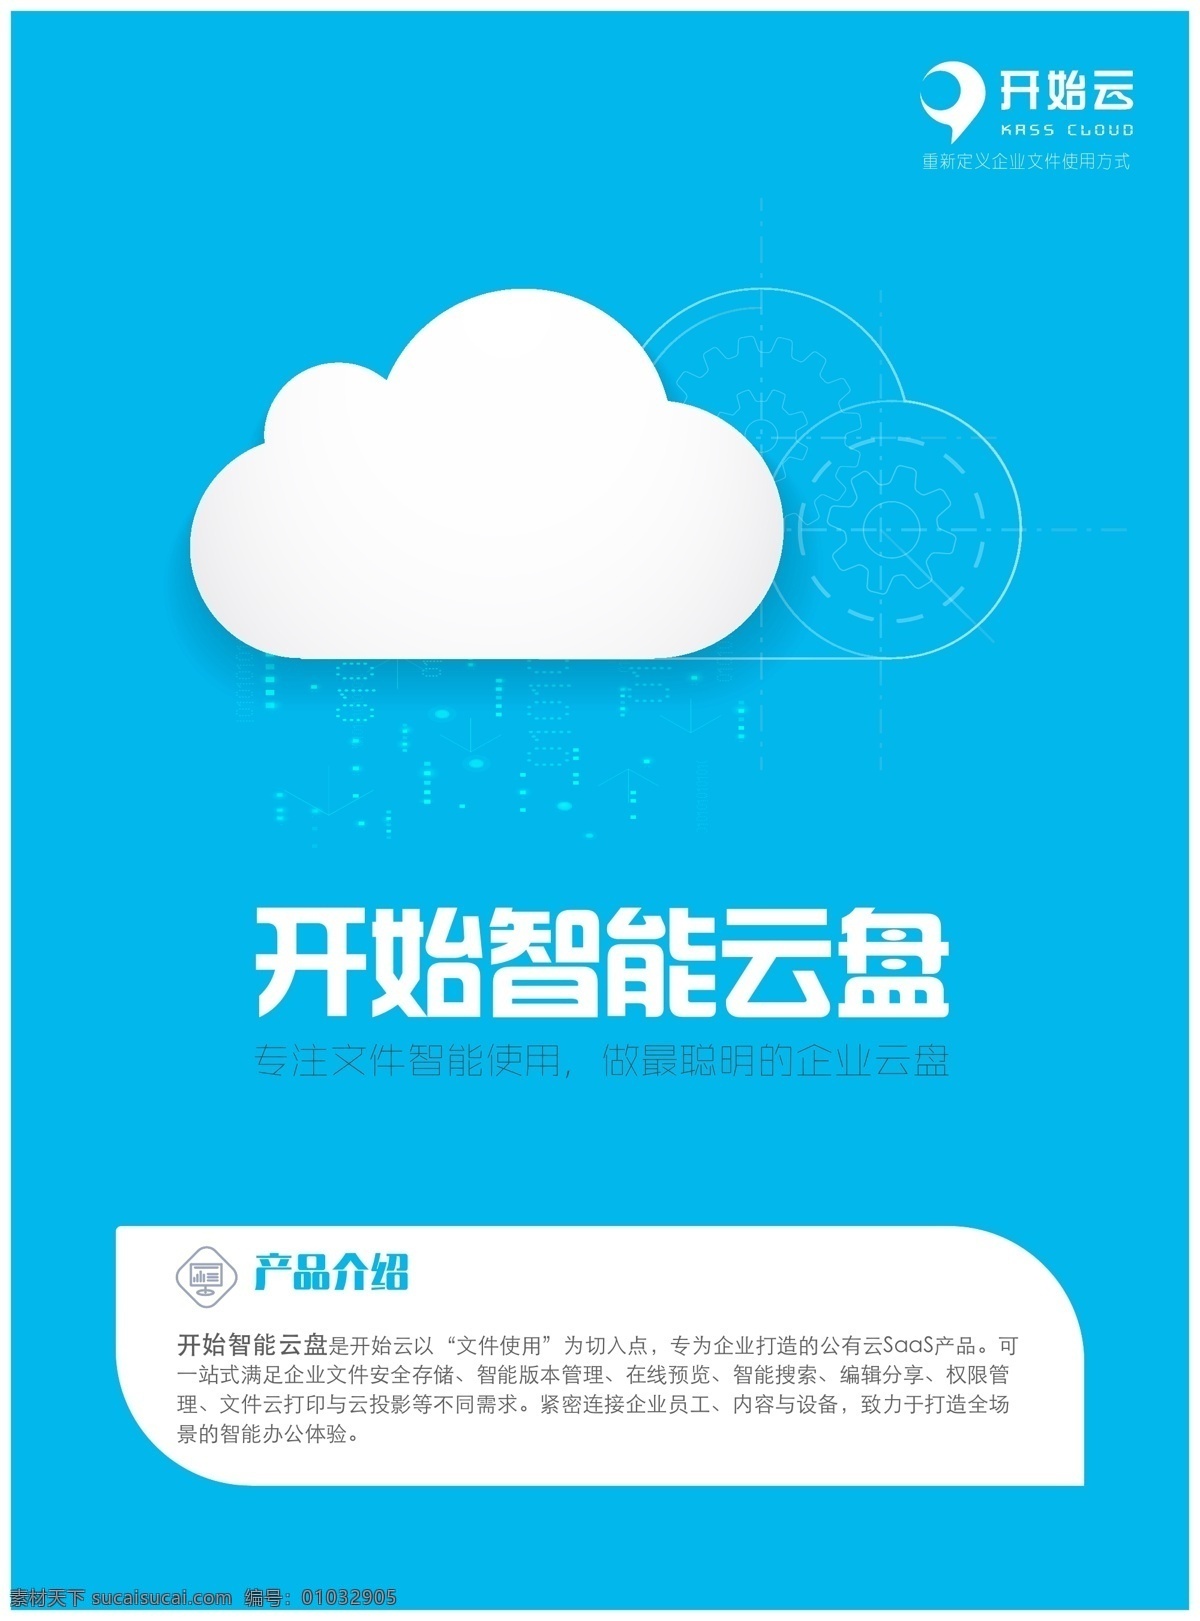 蓝色 产品 宣传单 扁平化设计 产品宣传单 电脑 简洁单页 科技感海报 时尚单页 手机 云盘 白色